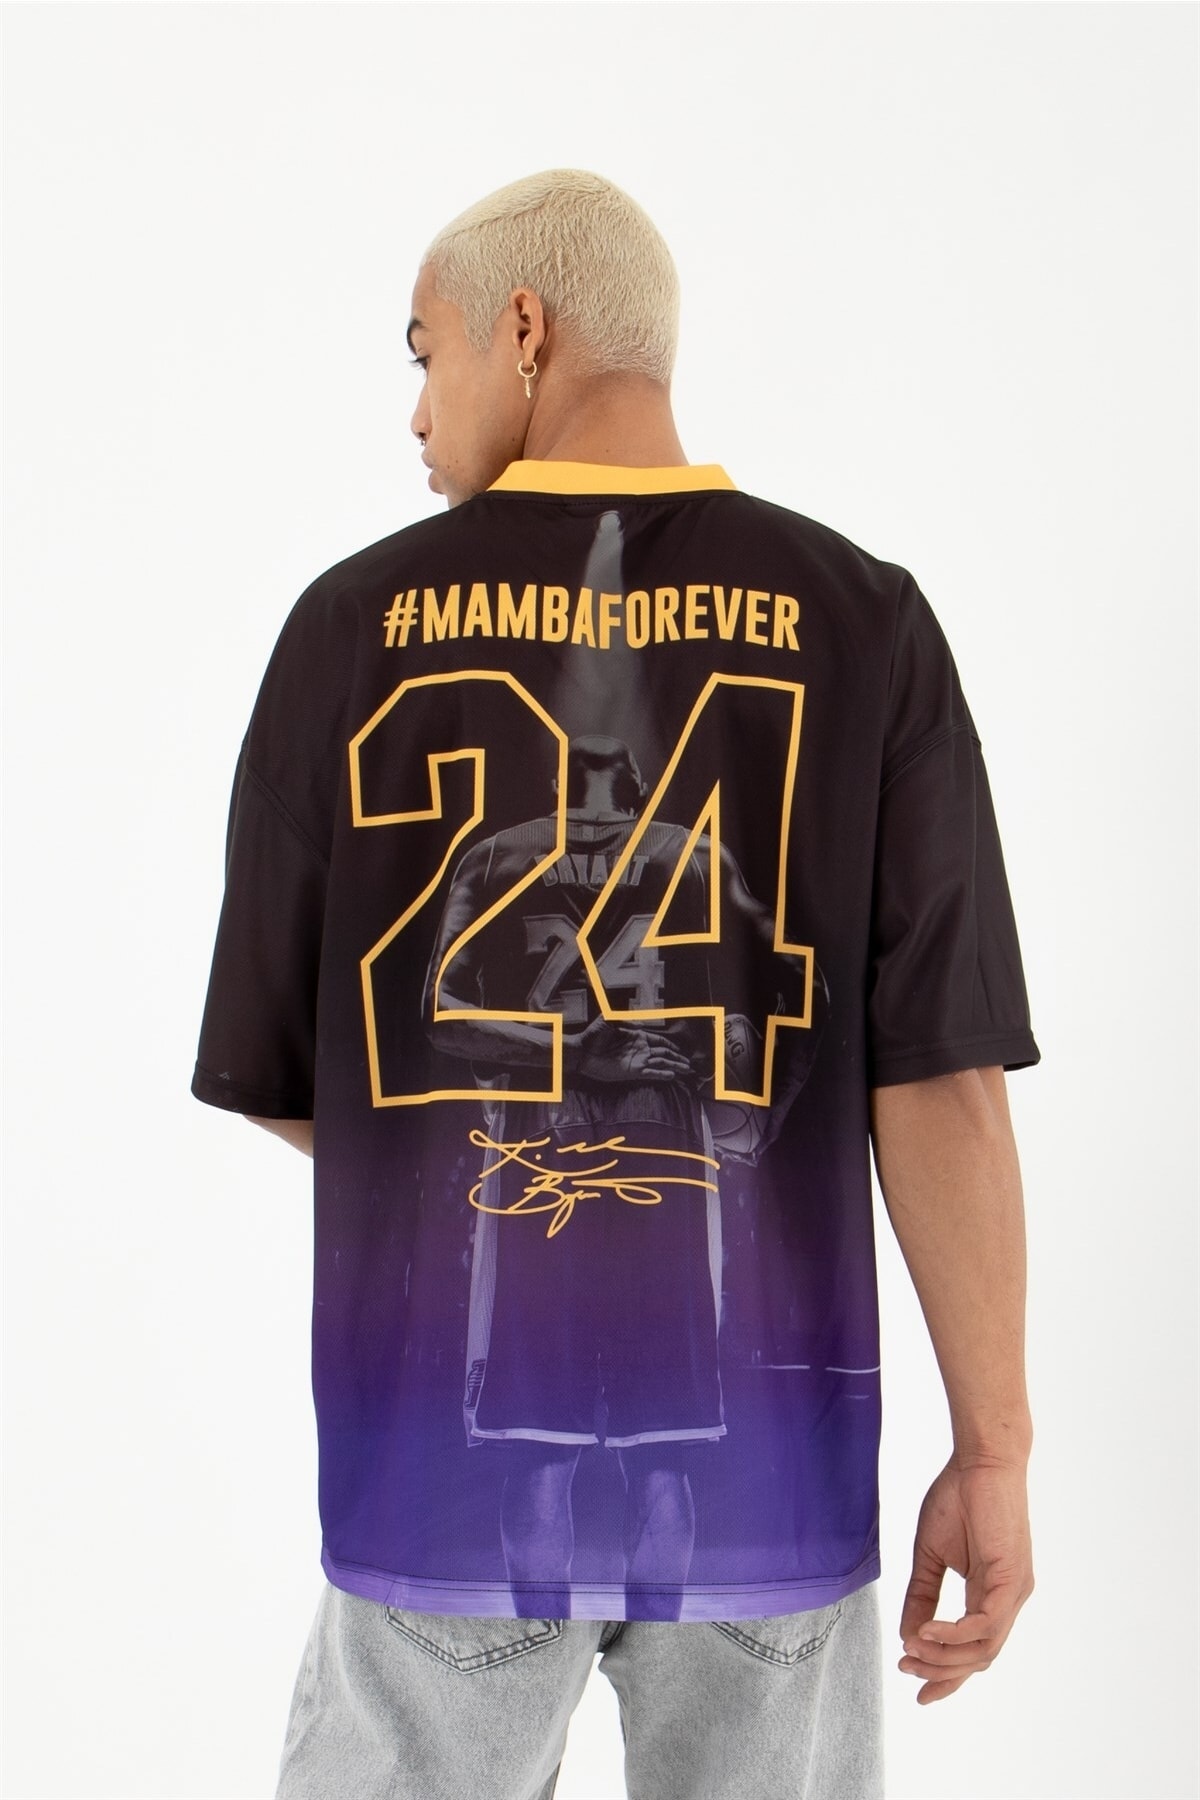 Machinist Oversize Mamba Forever Baskılı T-shirt Siyah/mor PG8299